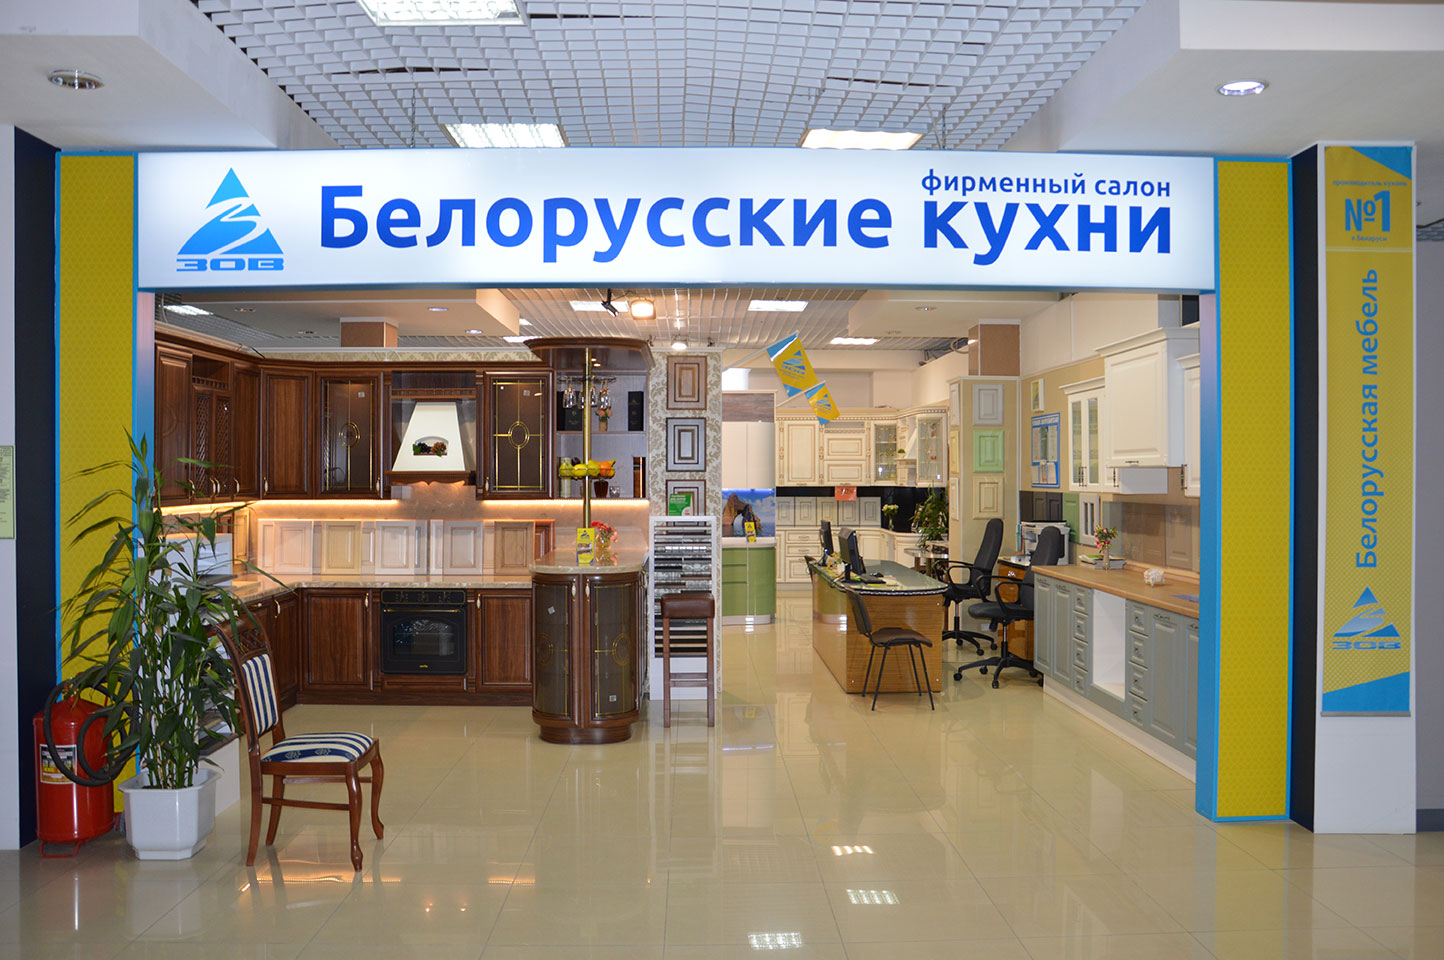 Кухни на Московской горке Екатеринбург — Кухонный центр ЗОВ на Радищева